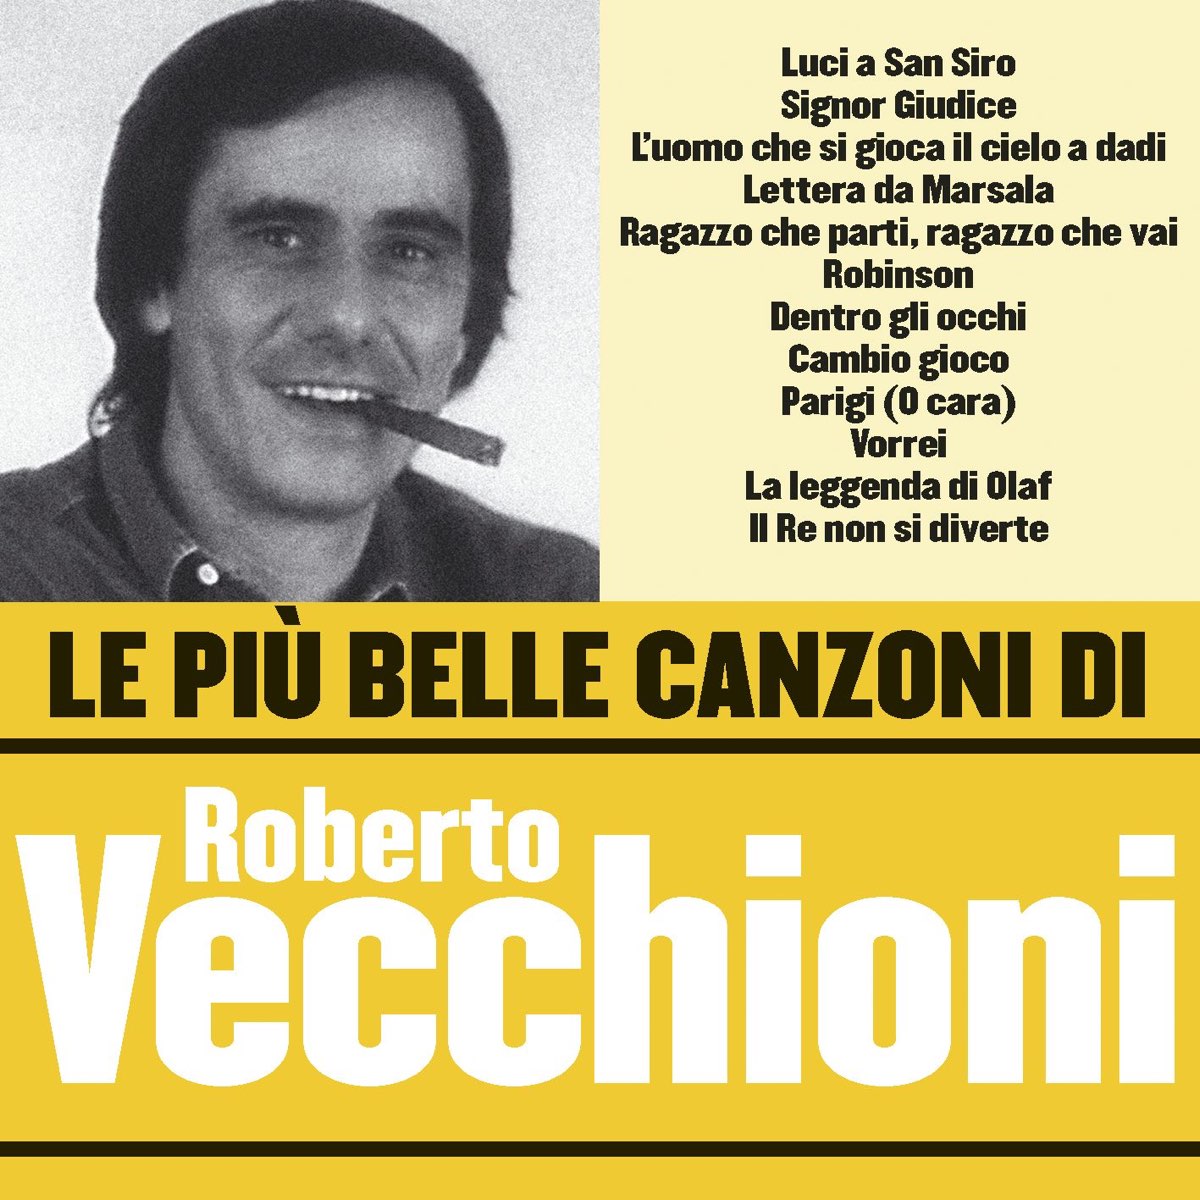 ‎Le più belle canzoni di Roberto Vecchioni by Roberto Vecchioni on ...